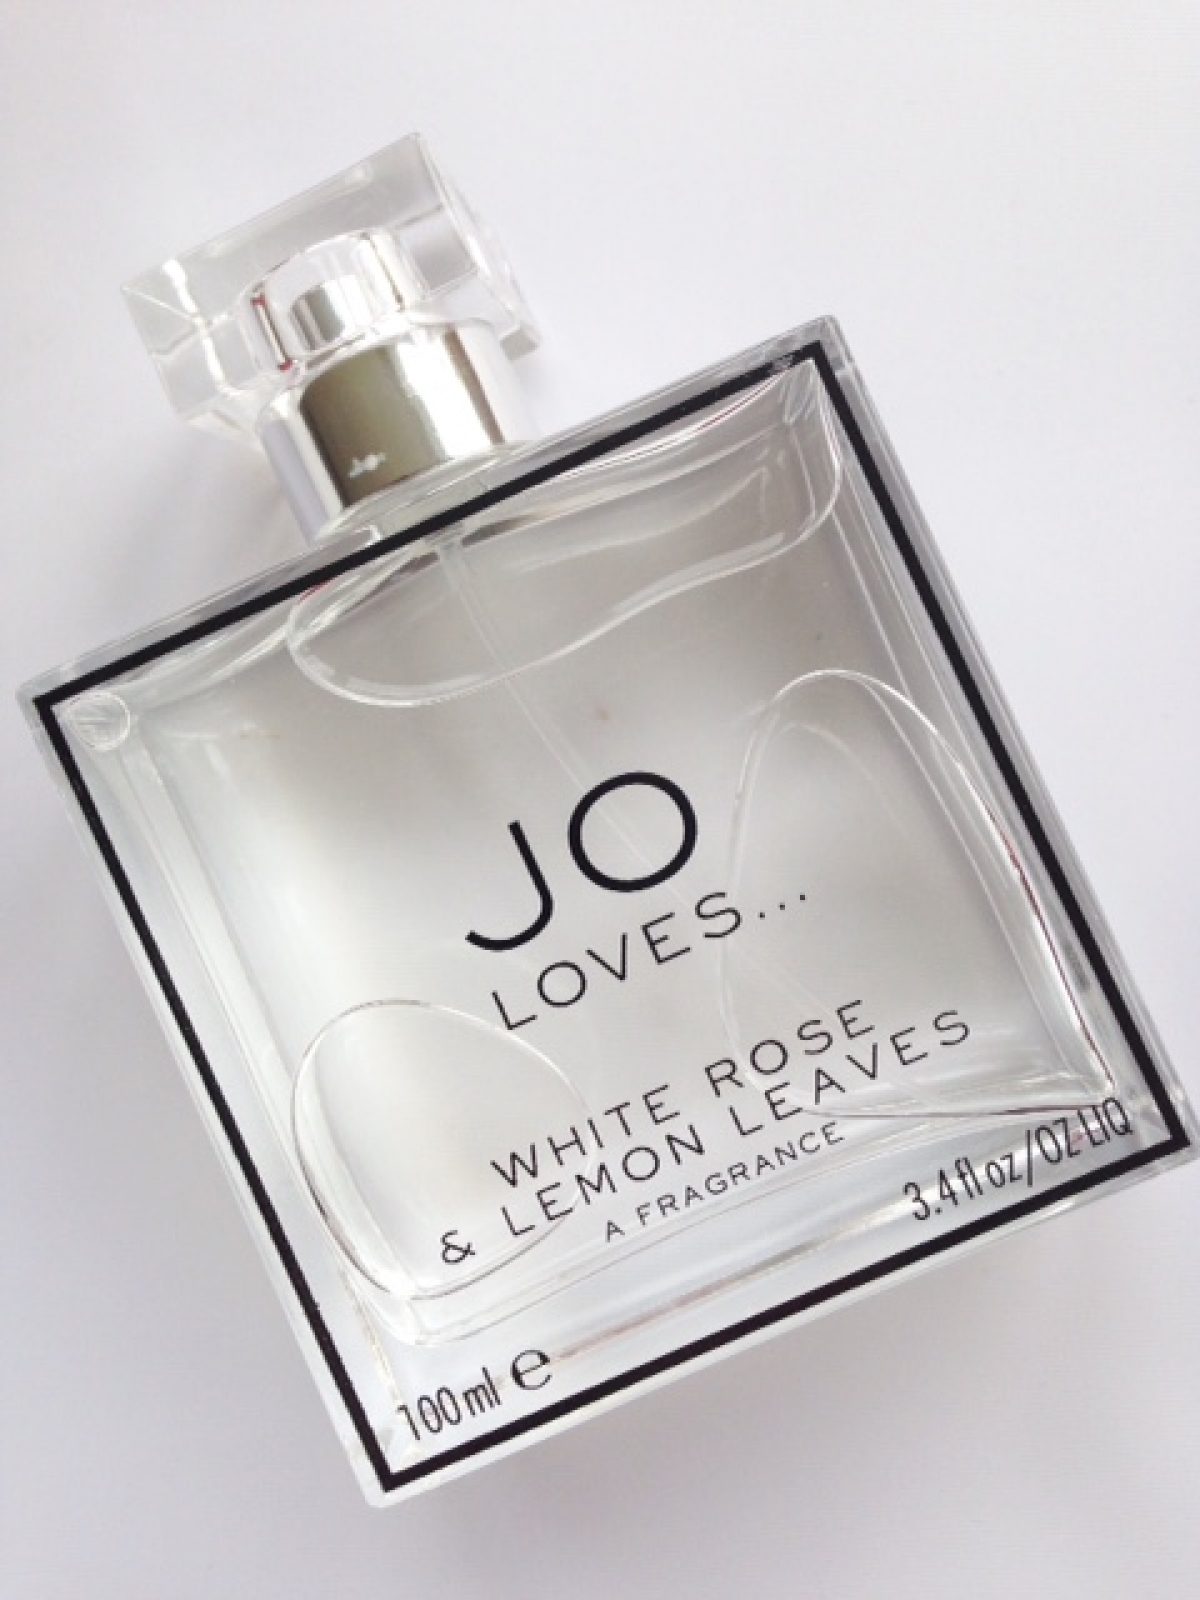 67%OFF!】 Jo Loves ‐ White rose Lemon leaves